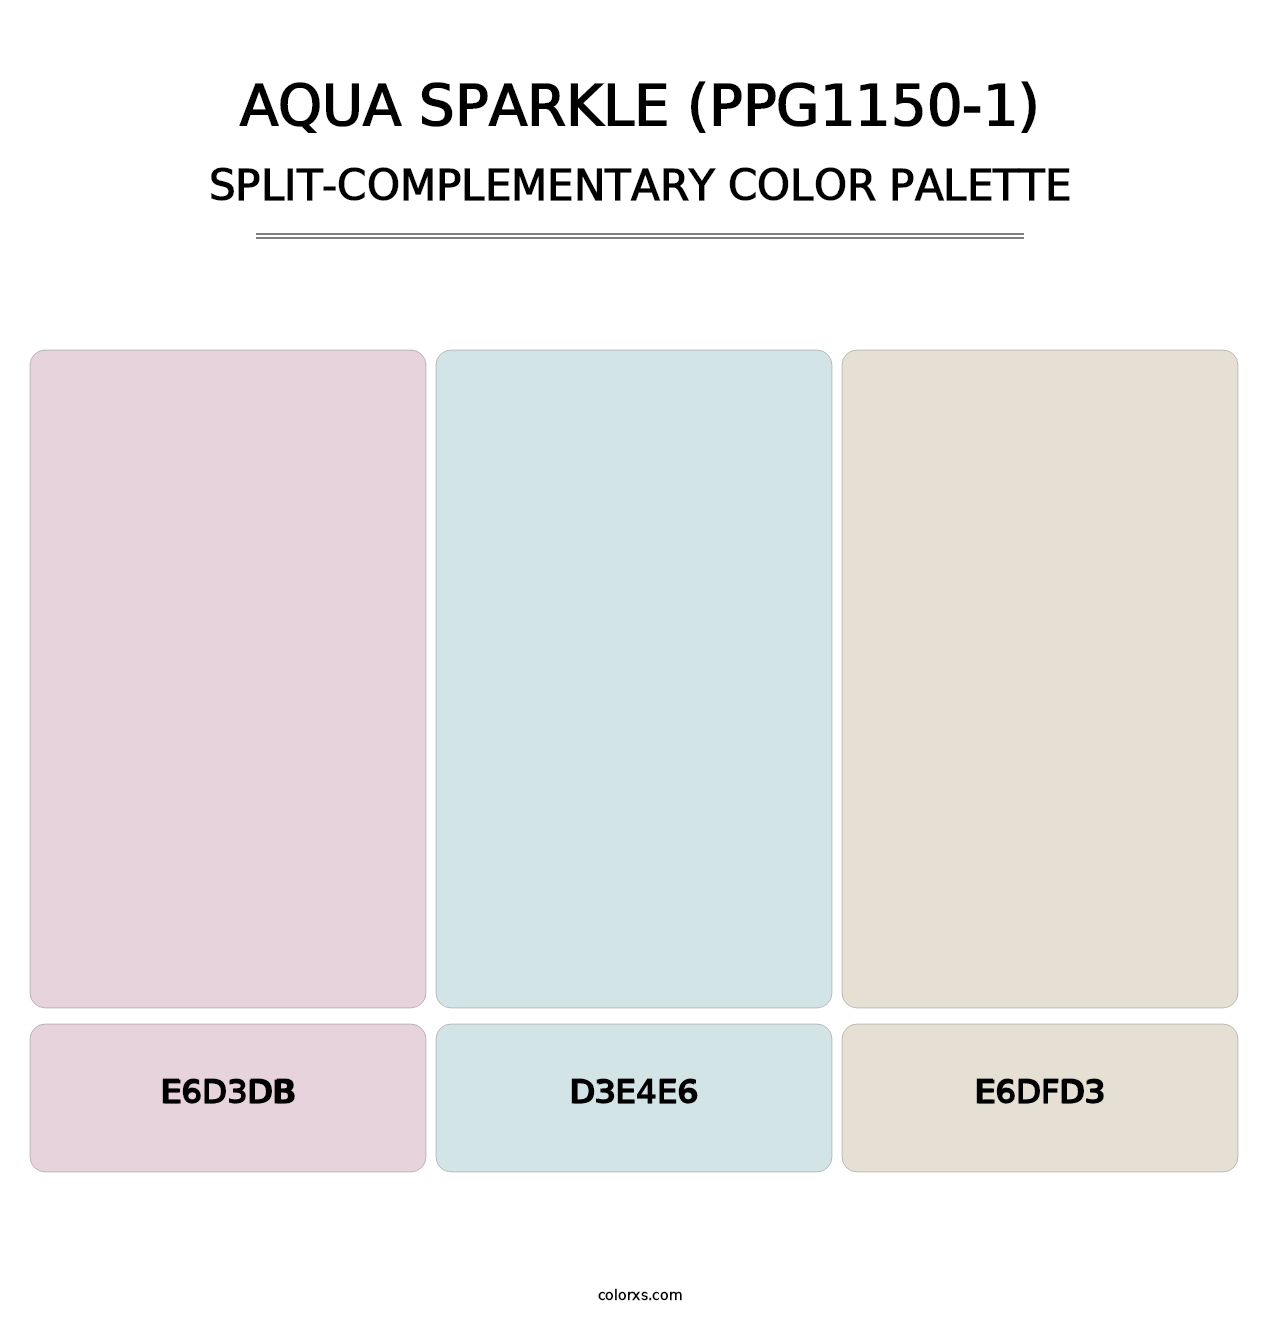 Aqua Sparkle (PPG1150-1) - Split-Complementary Color Palette